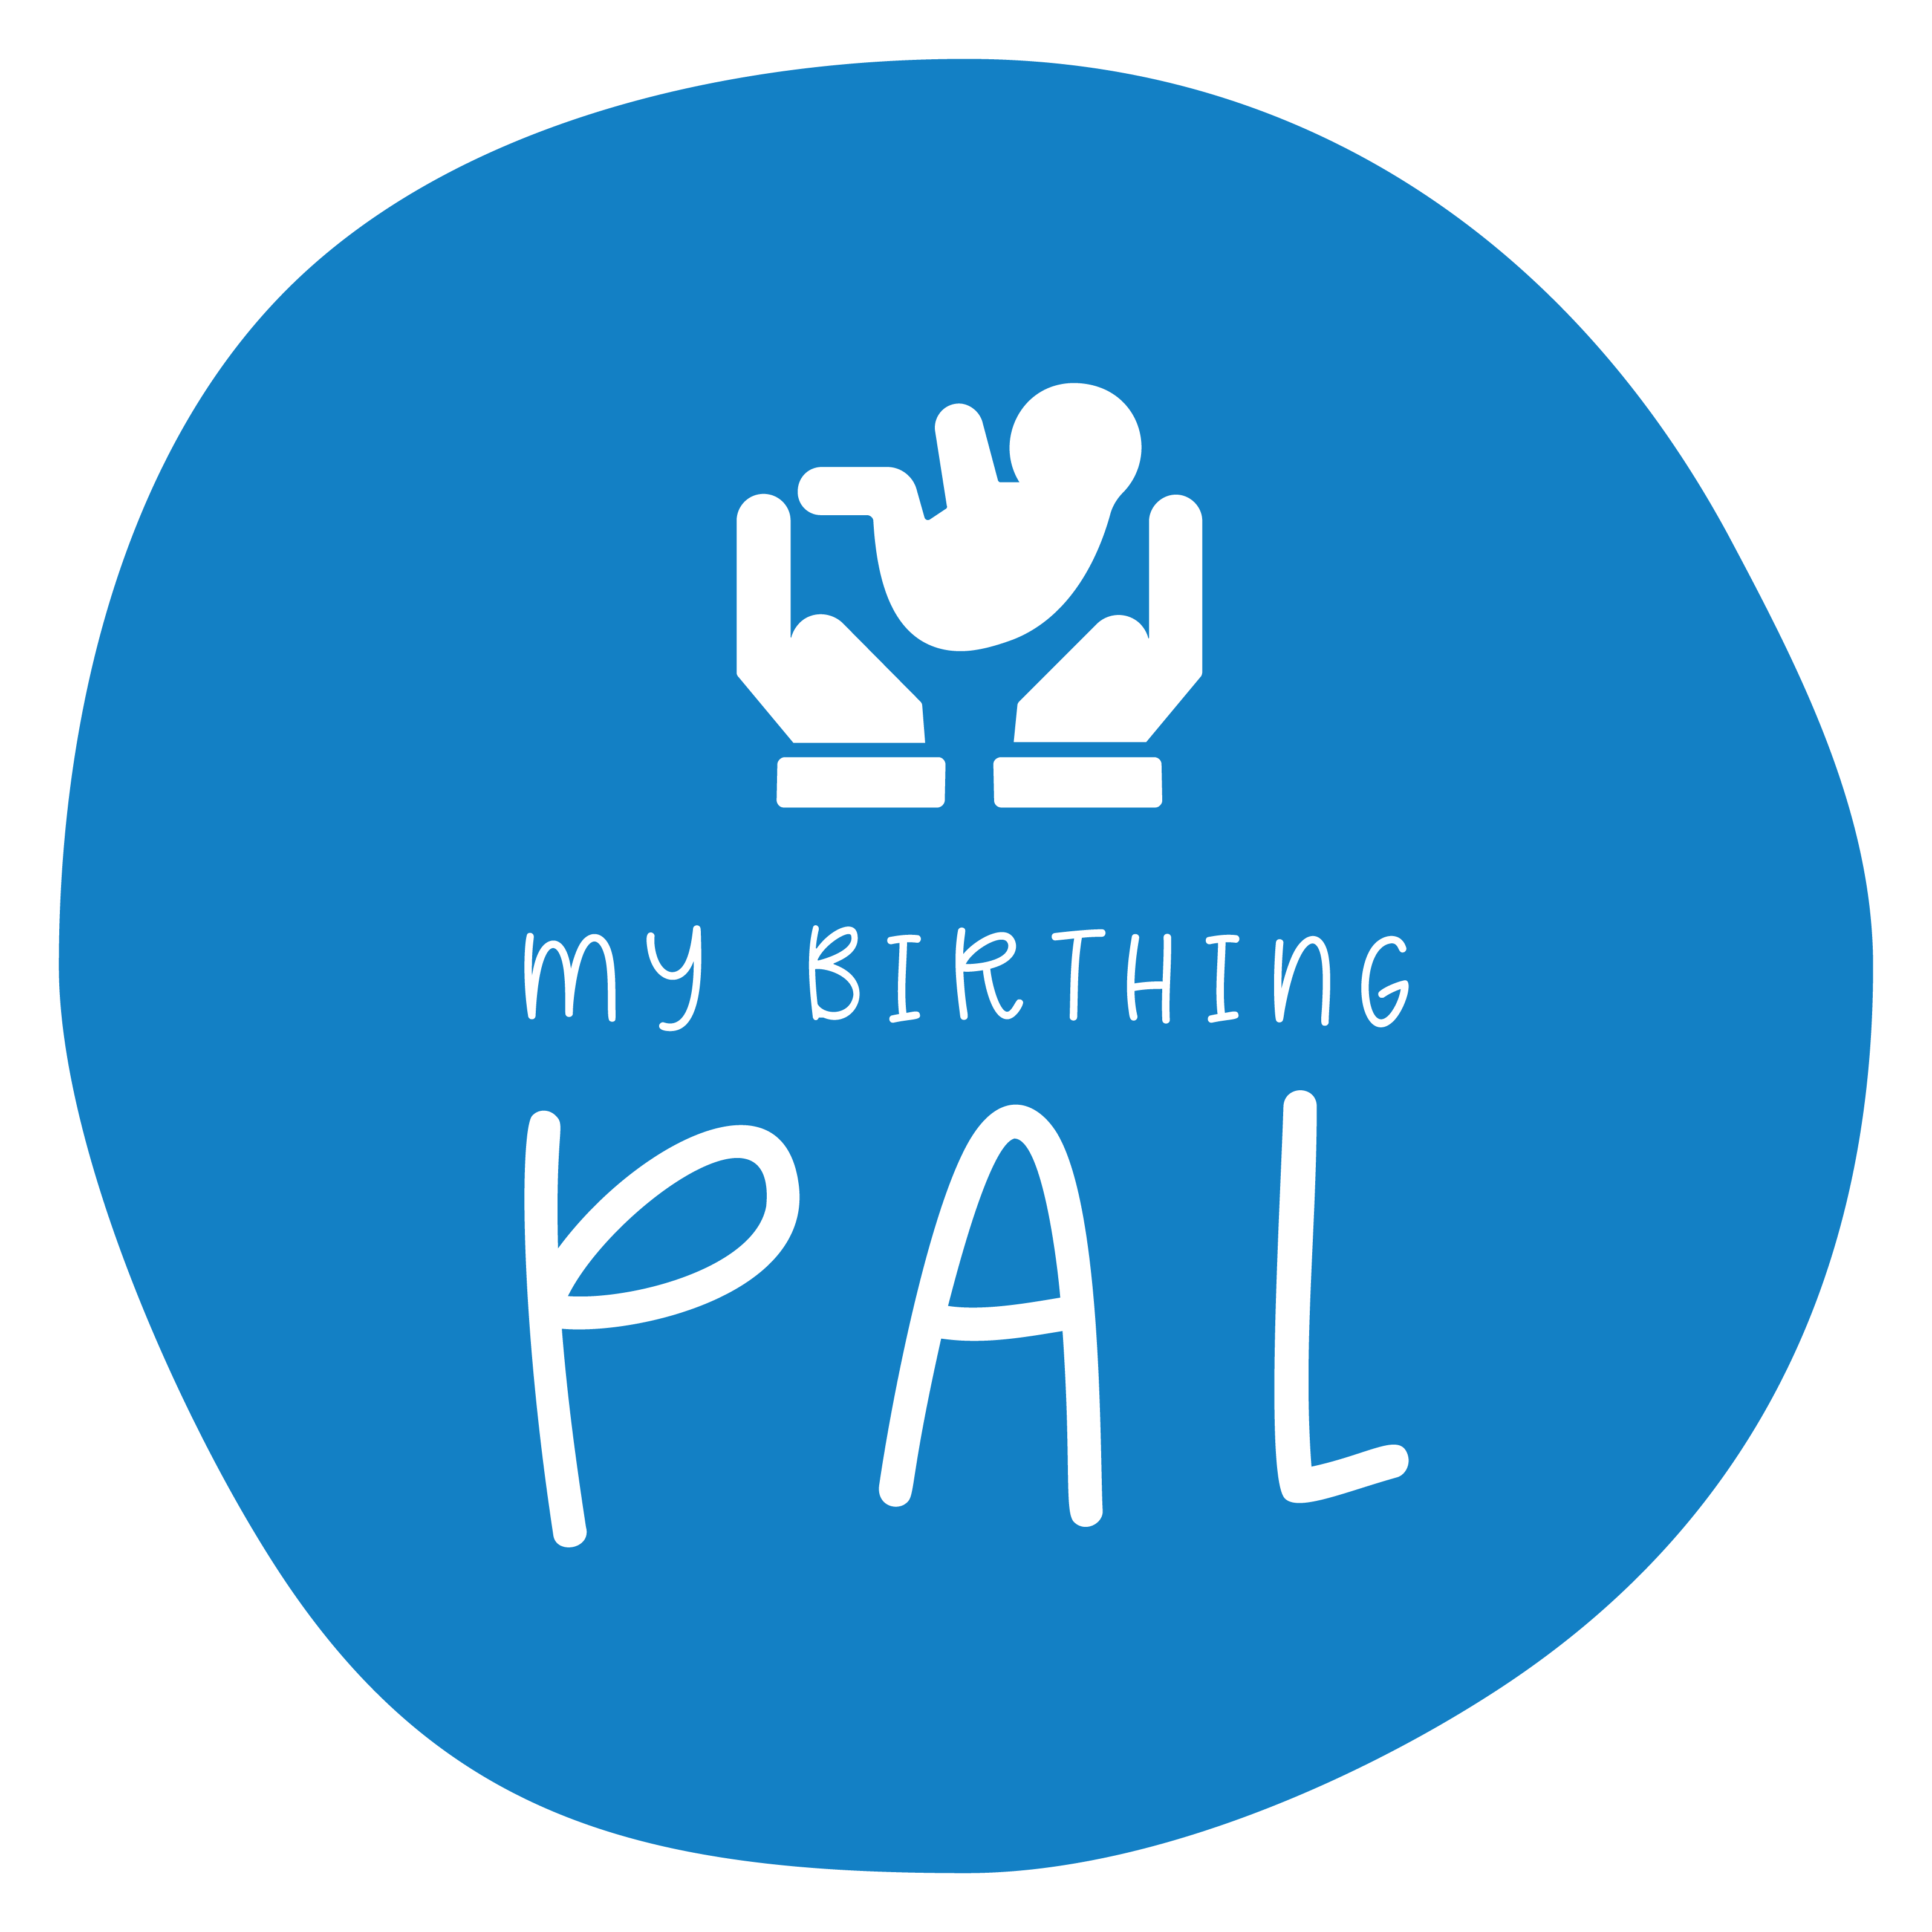 My Birthing Pal's logo